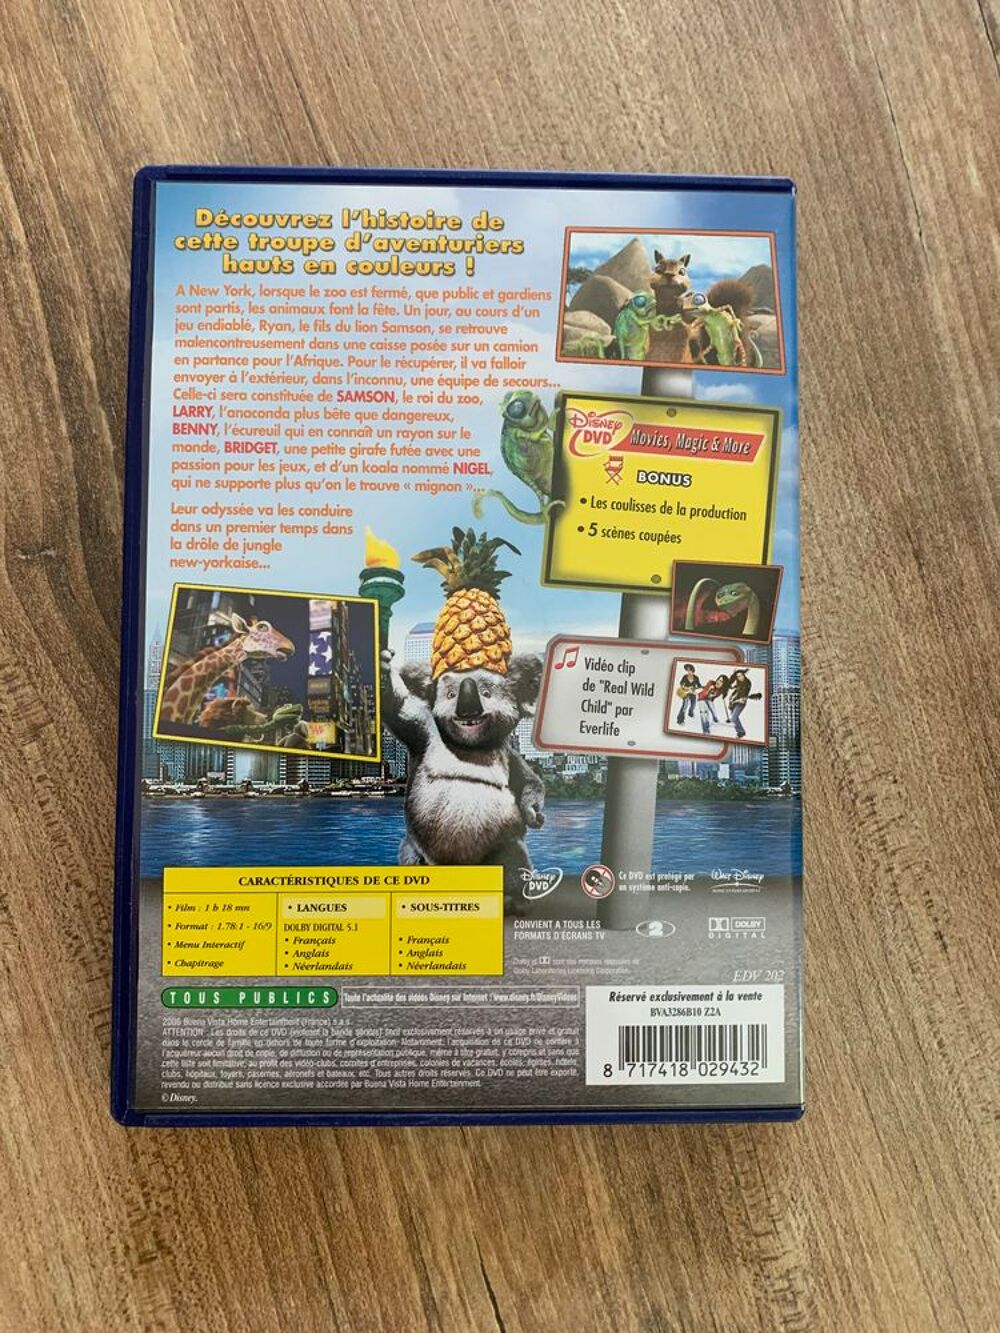 DVD Walt Disney &quot; The Wild la ville c' est la jun DVD et blu-ray